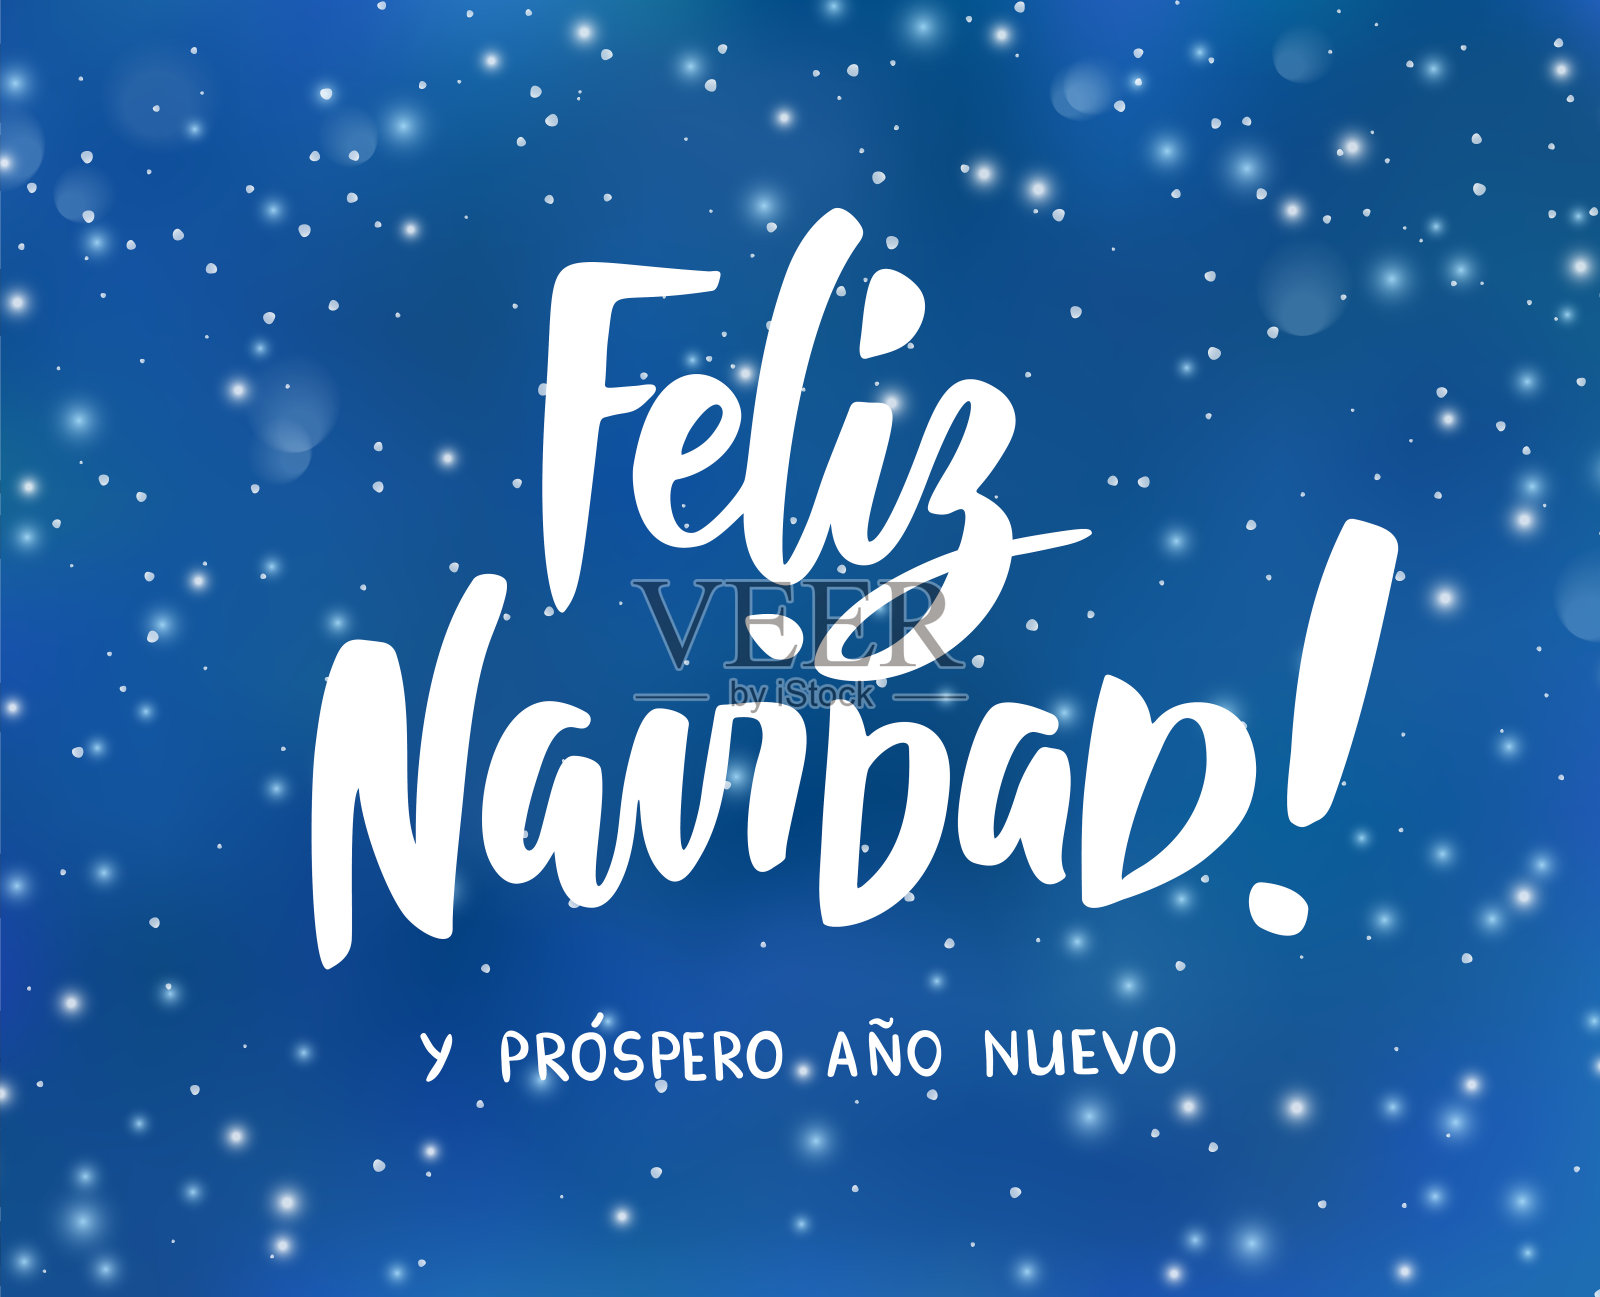 新西班牙语圣诞快乐，新年快乐。节日问候。冬季背景与飘落的雪效果。设计模板素材